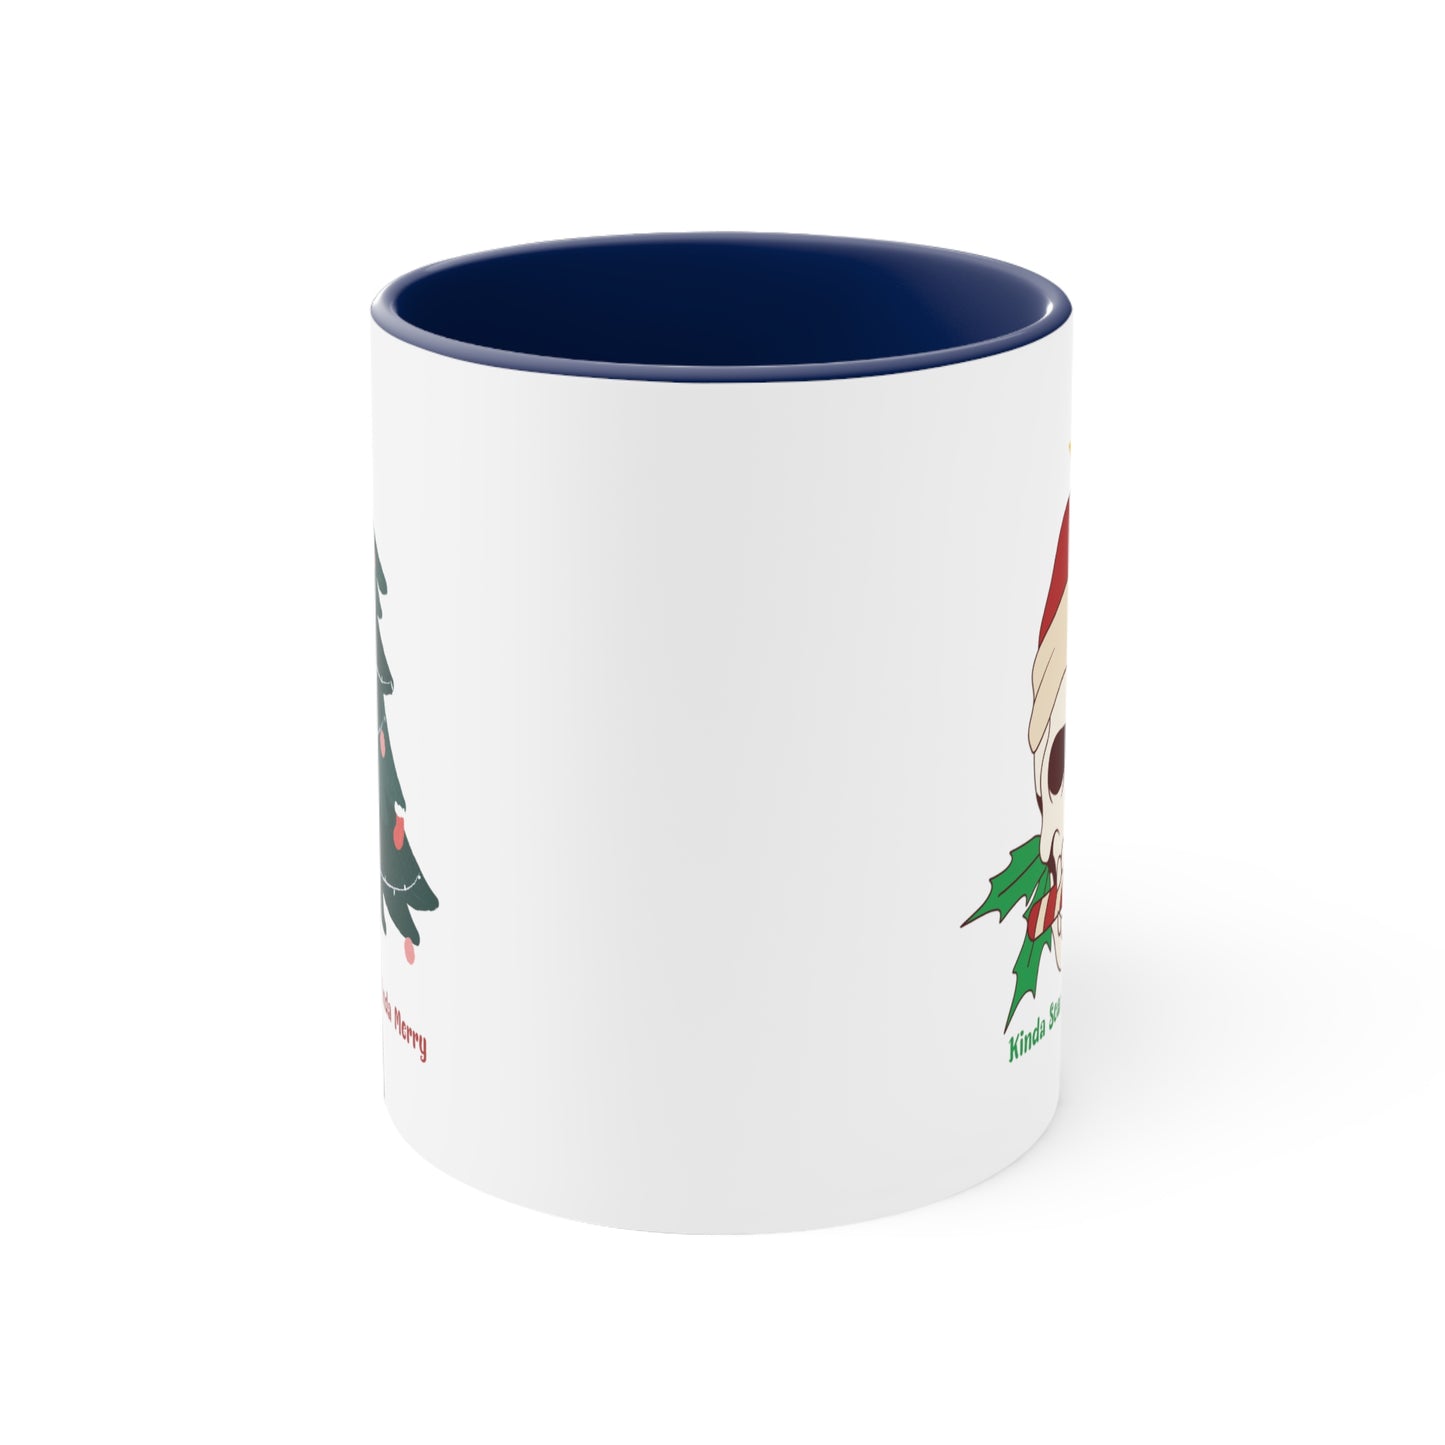 Kinda Scary Kindsa Merry Mug, Funny Christmas Mugt, Cute Spooky Season Mug, Custom Christmas Skeleton Mug, Accent Coffee Mug, 11oz, 4 colors